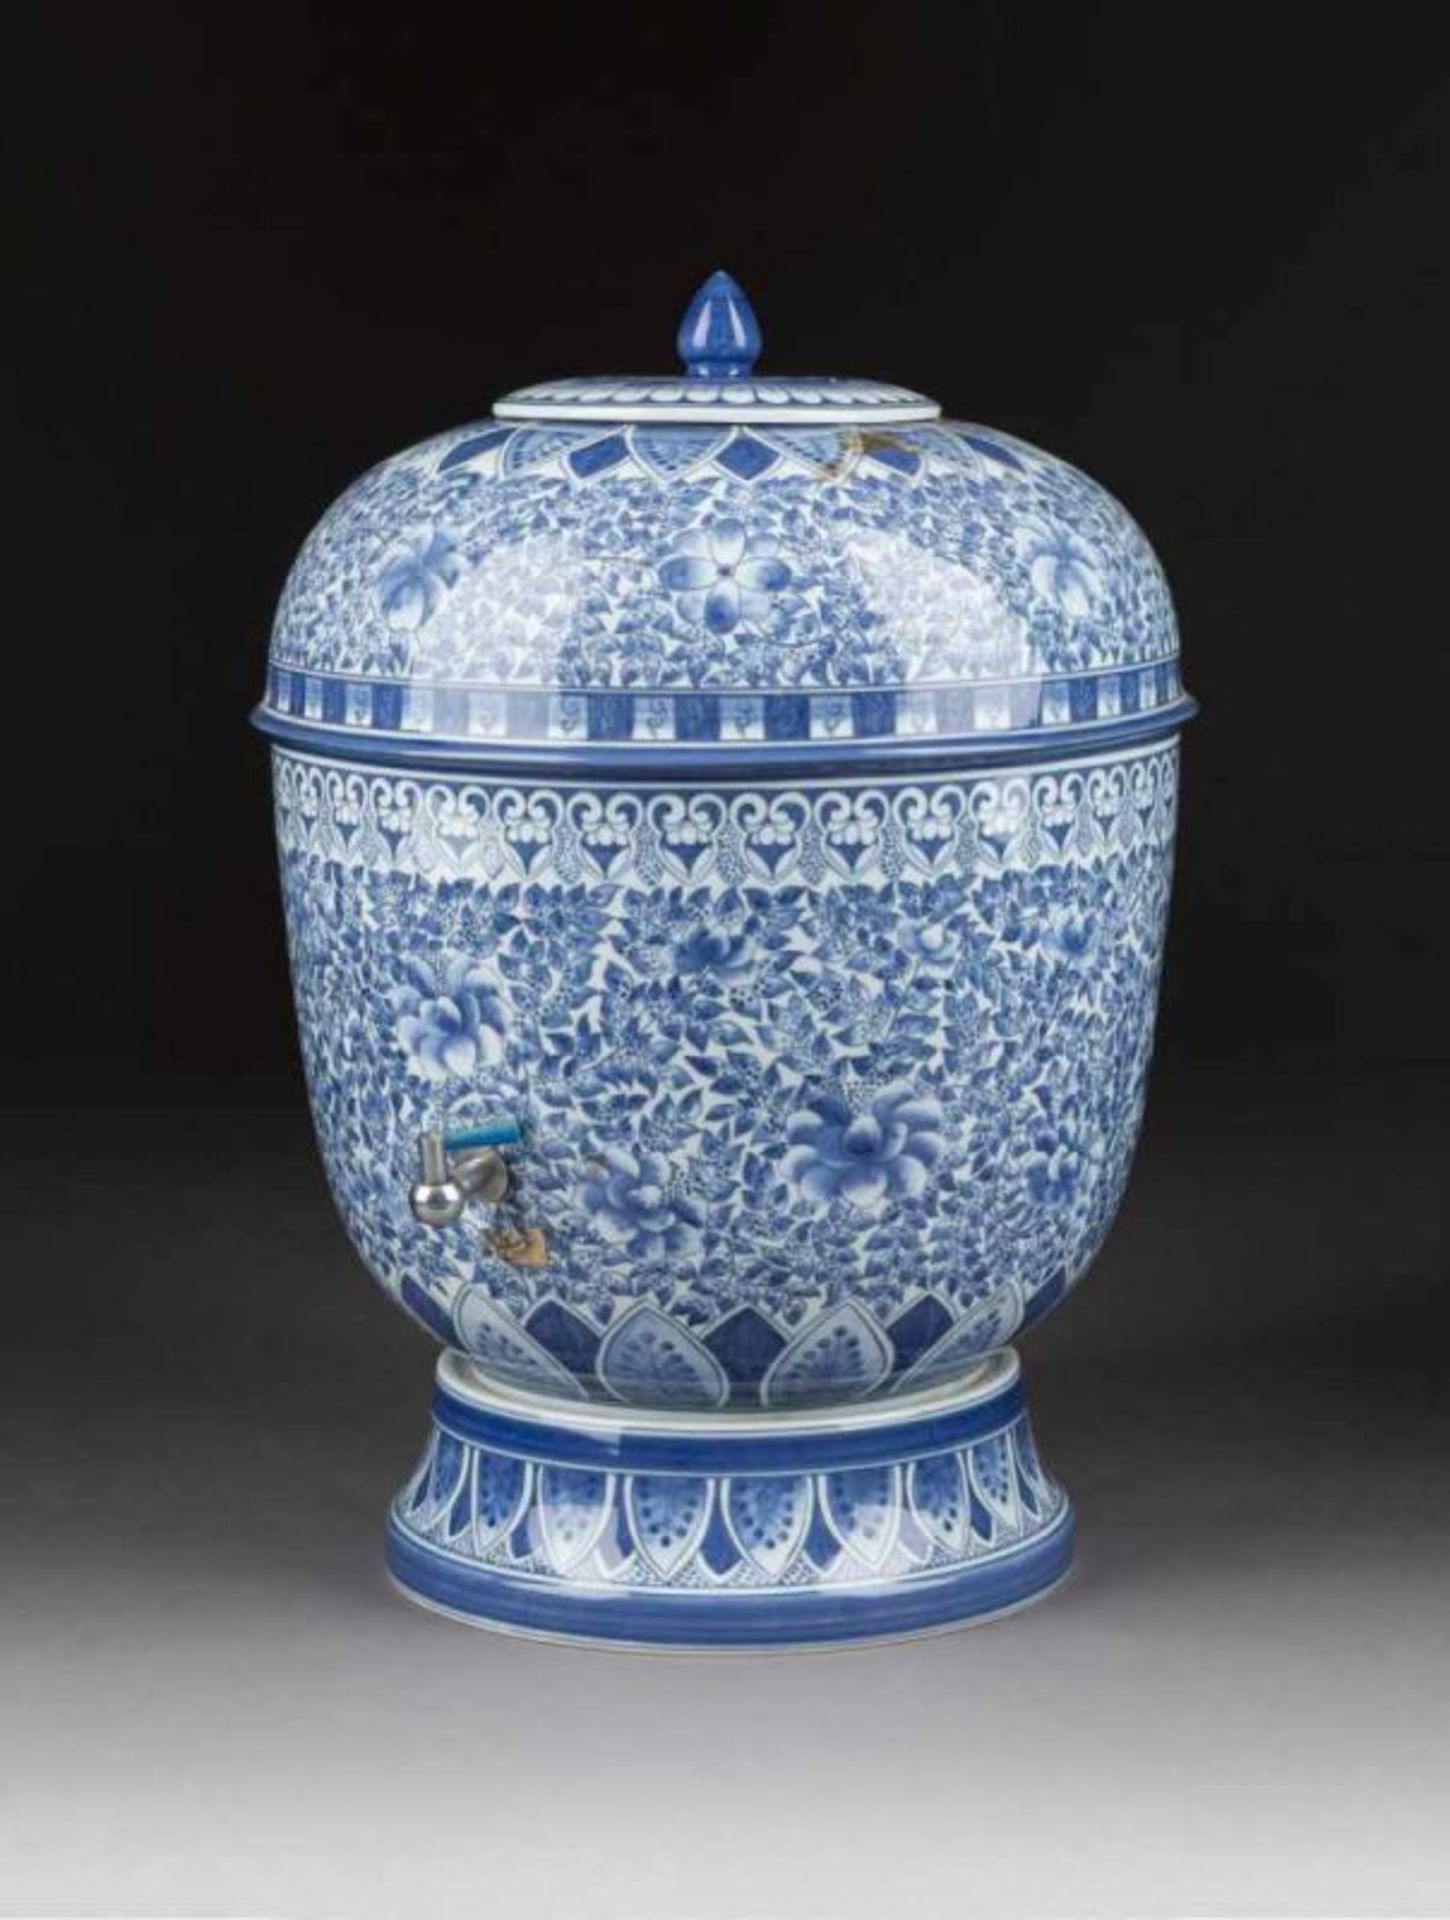 GROßER INGWERTOPF China, Anfang 20. Jh. Porzellan, unterglasurblauer Dekor. Gesamt-H. 59 cm. Auf